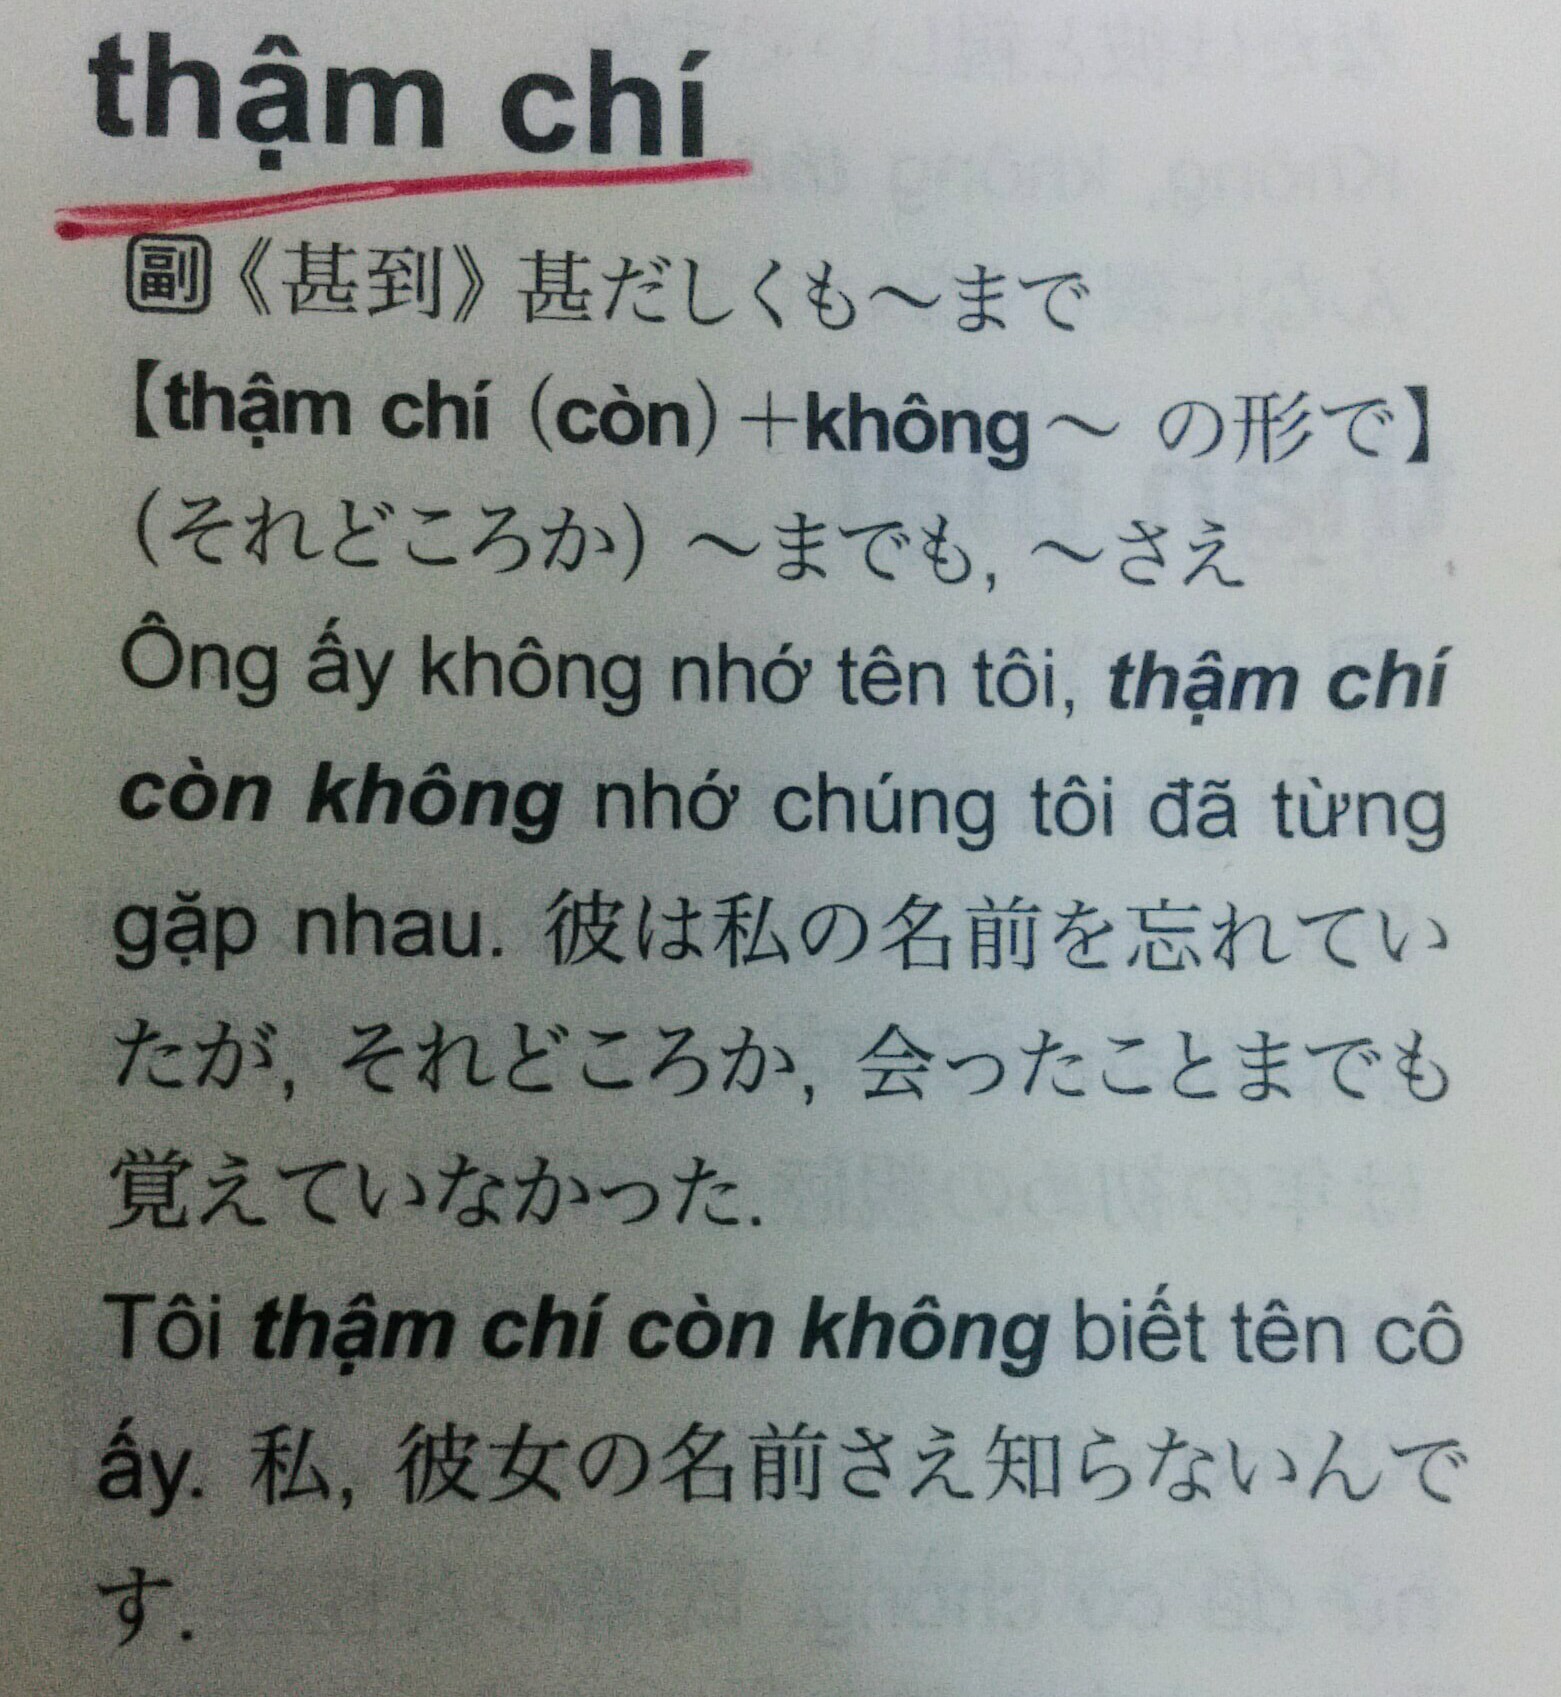 Vol 164 Thậm Chiの役割 田畑トマトのベトナム語ボックス